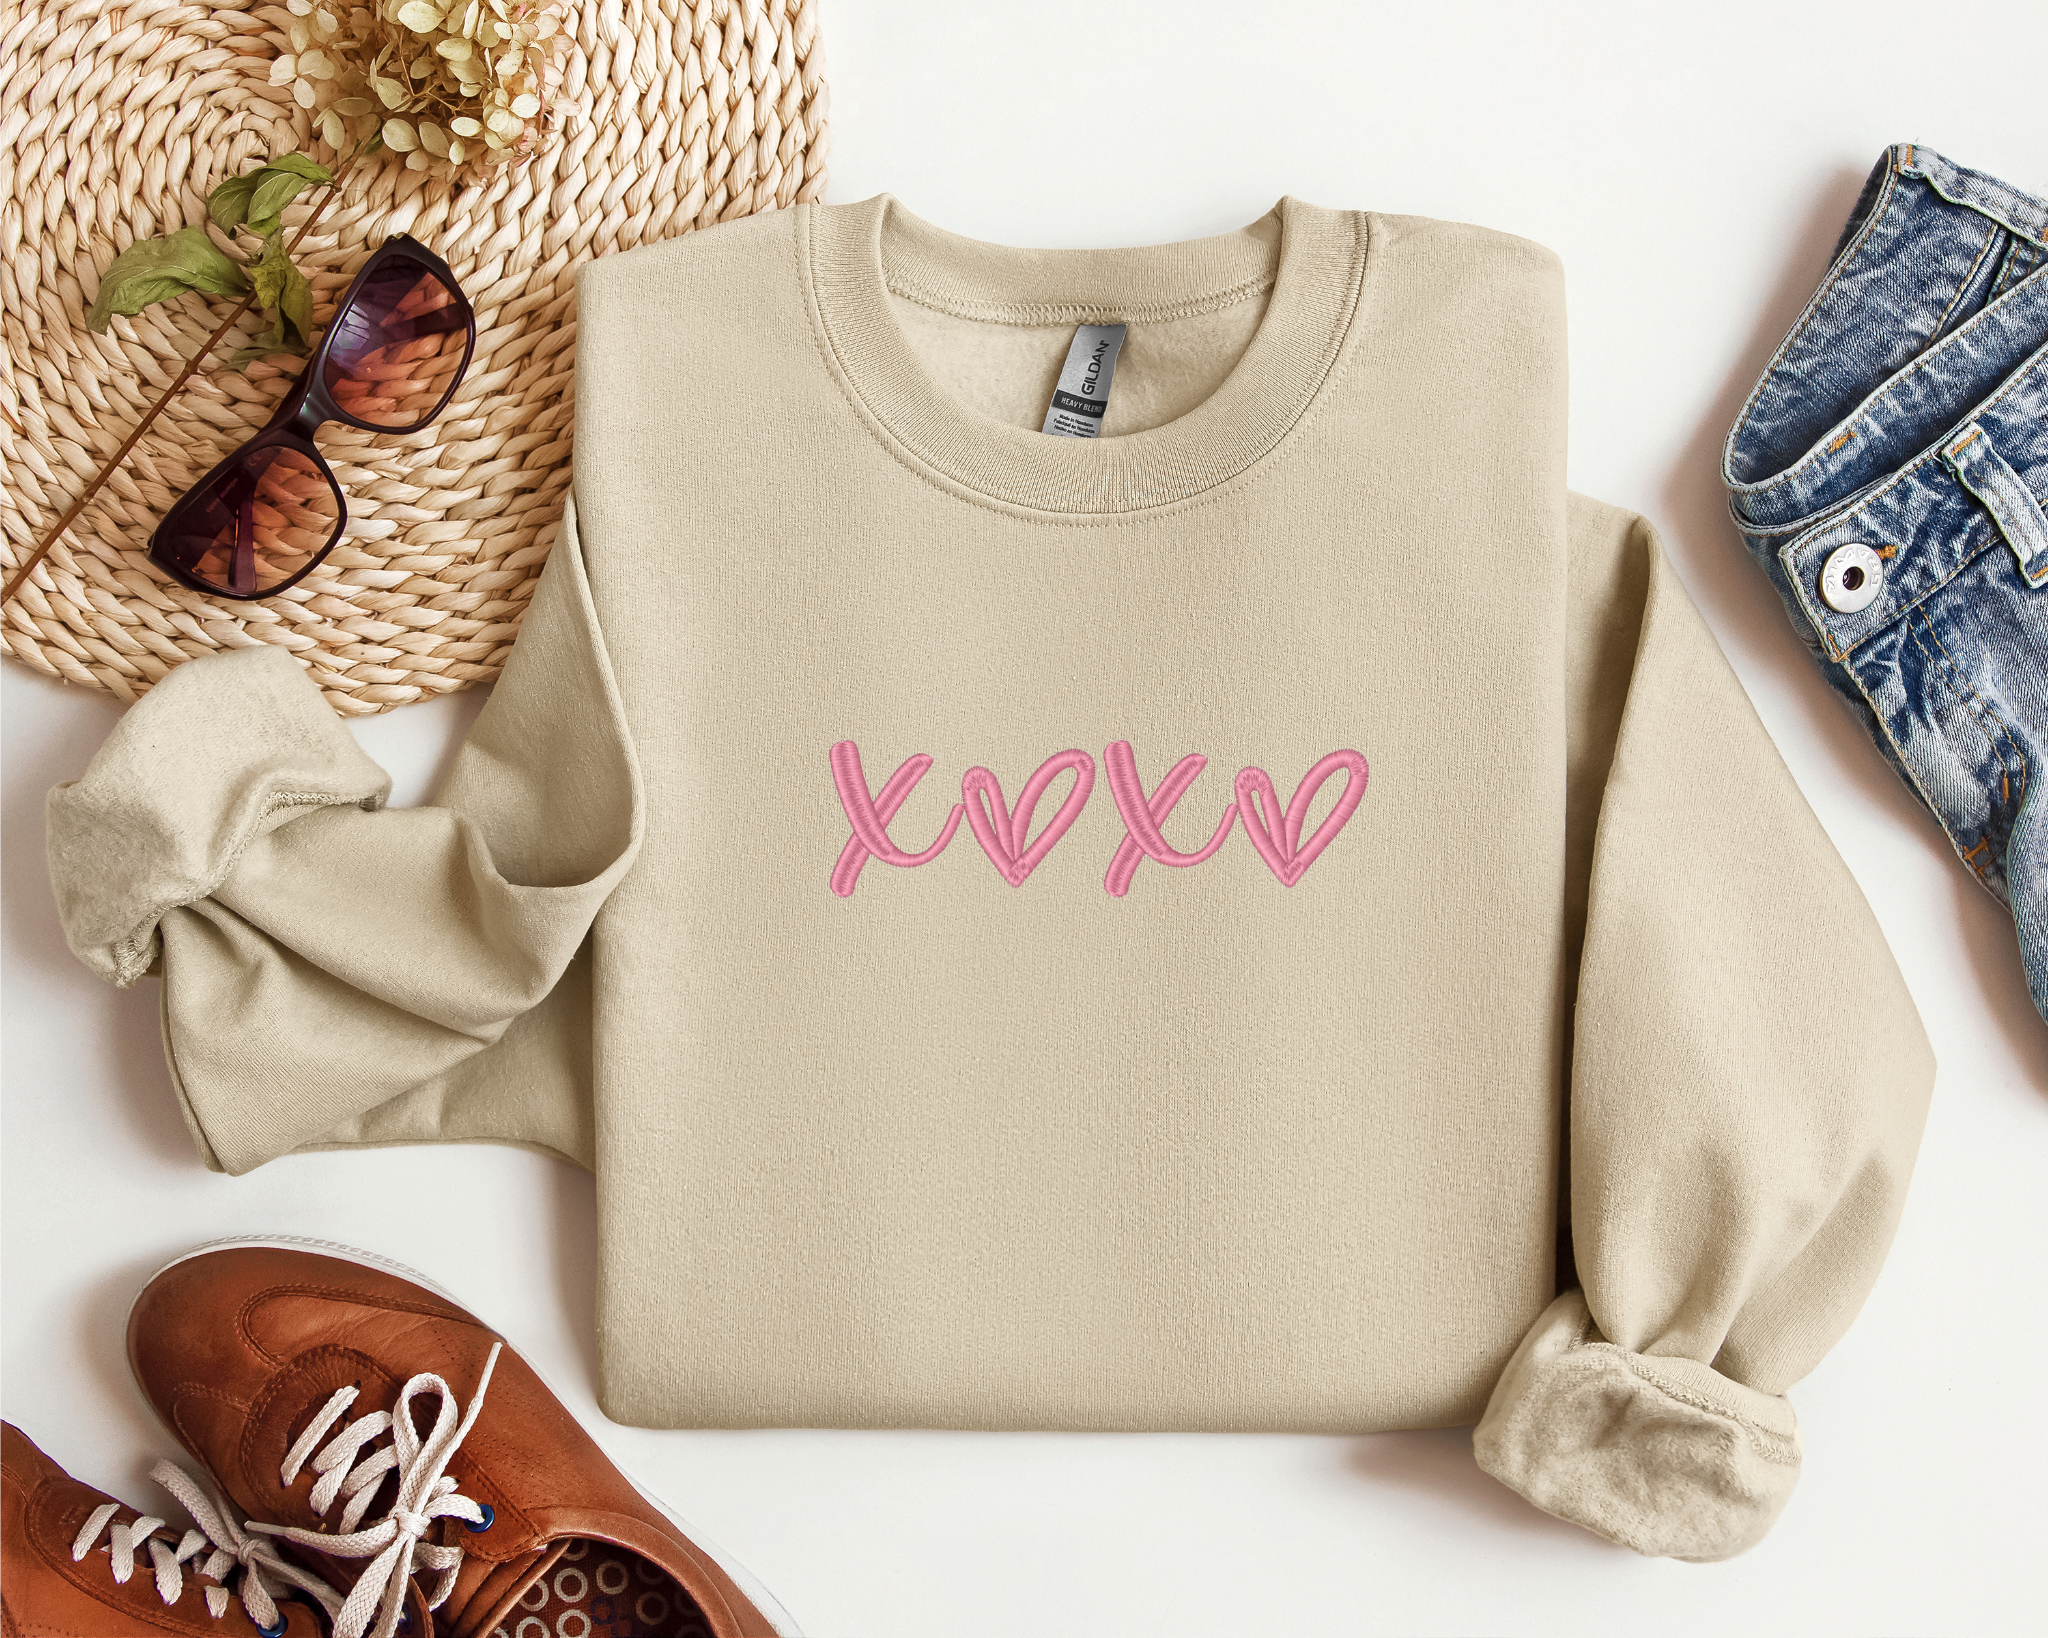 Embroider XOXO Valentine Day Sweatshirt